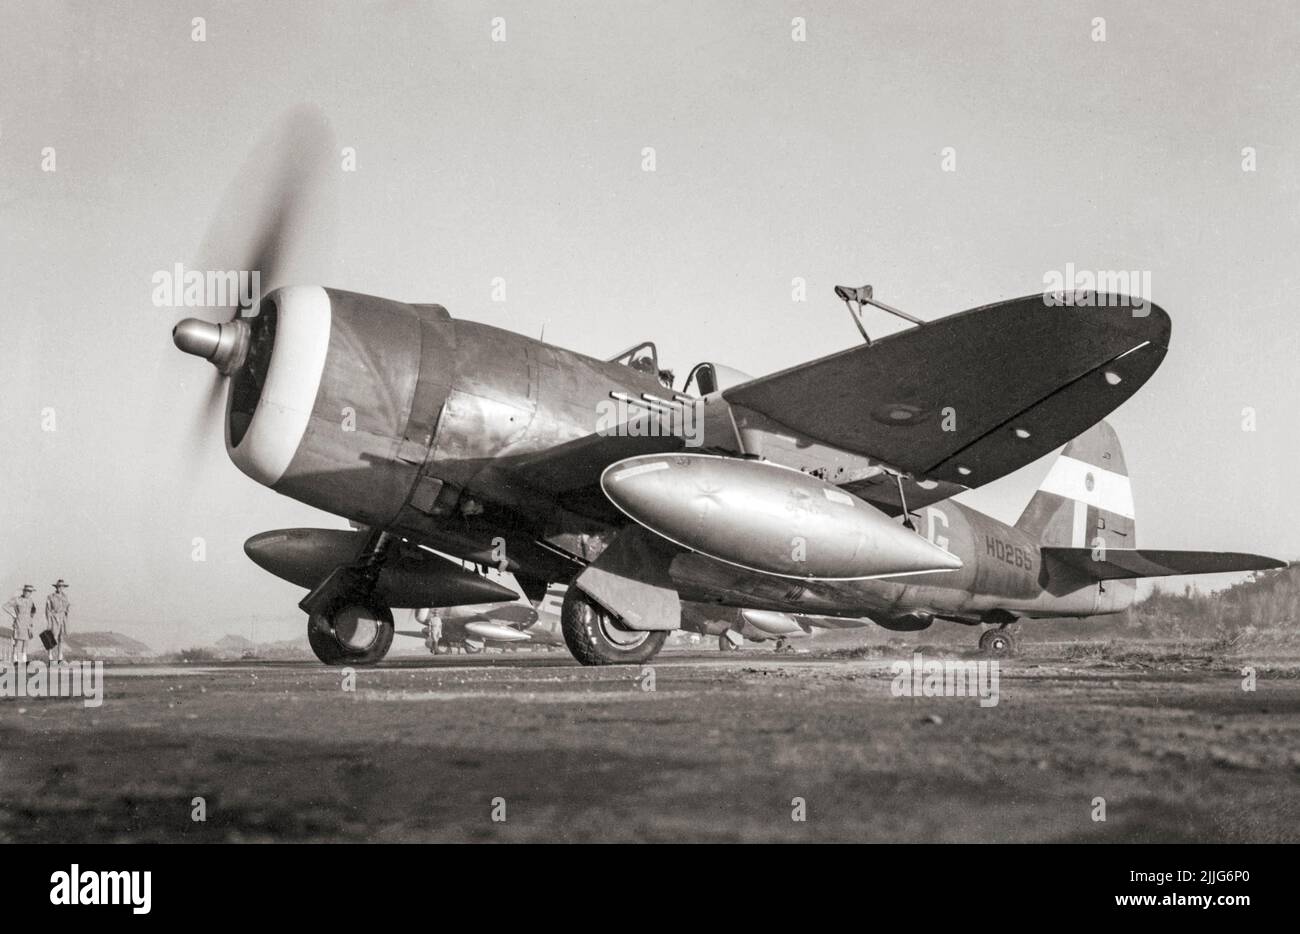 Thunderbolt Mark II von No. 30 Squadron RAF, bereitet sich darauf vor, für einen Sortie aus Cox's Bazaar, Indien, abzuheben. Die Republic P-47 Thunderbolt war ein Kampfflugzeug aus dem Zweiten Weltkrieg, das von 1941 bis 1945 vom amerikanischen Luftfahrtunternehmen Republic Aviation hergestellt wurde. Es könnte eine Bombenlast von 2.500 lb (1.100 kg) machen es zu einem der schwersten Kämpfer des Krieges. Stockfoto